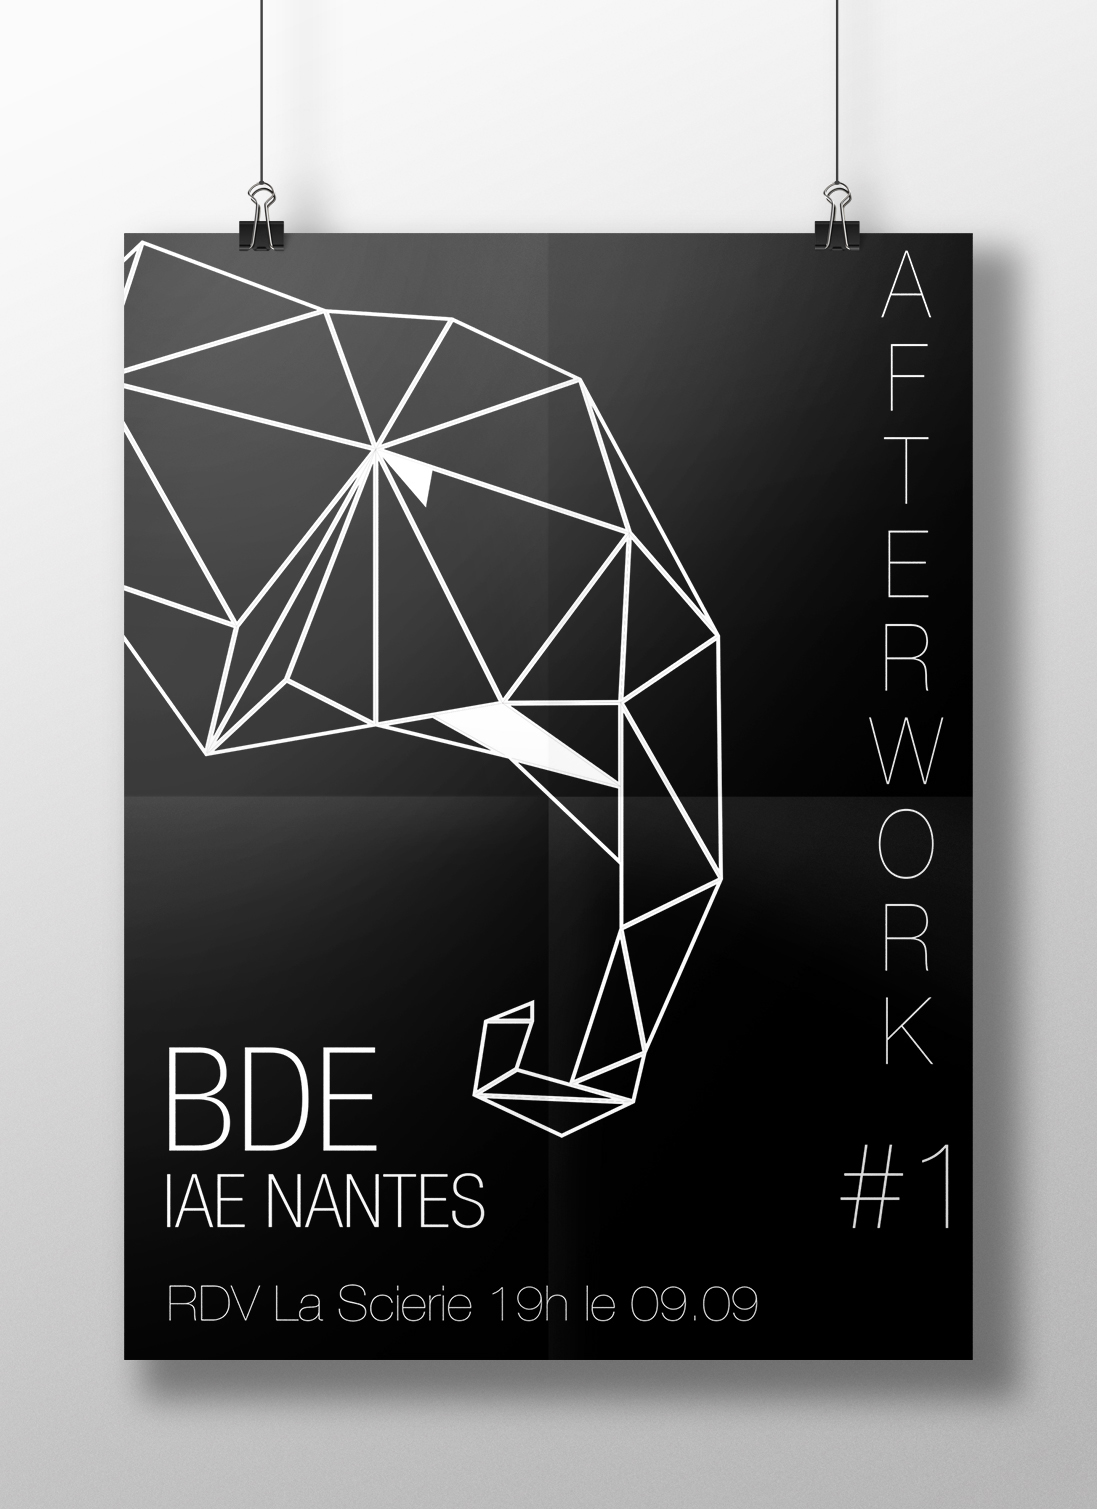 iaenantes elephant Nantes iledenantes BDE University chill party afterwork